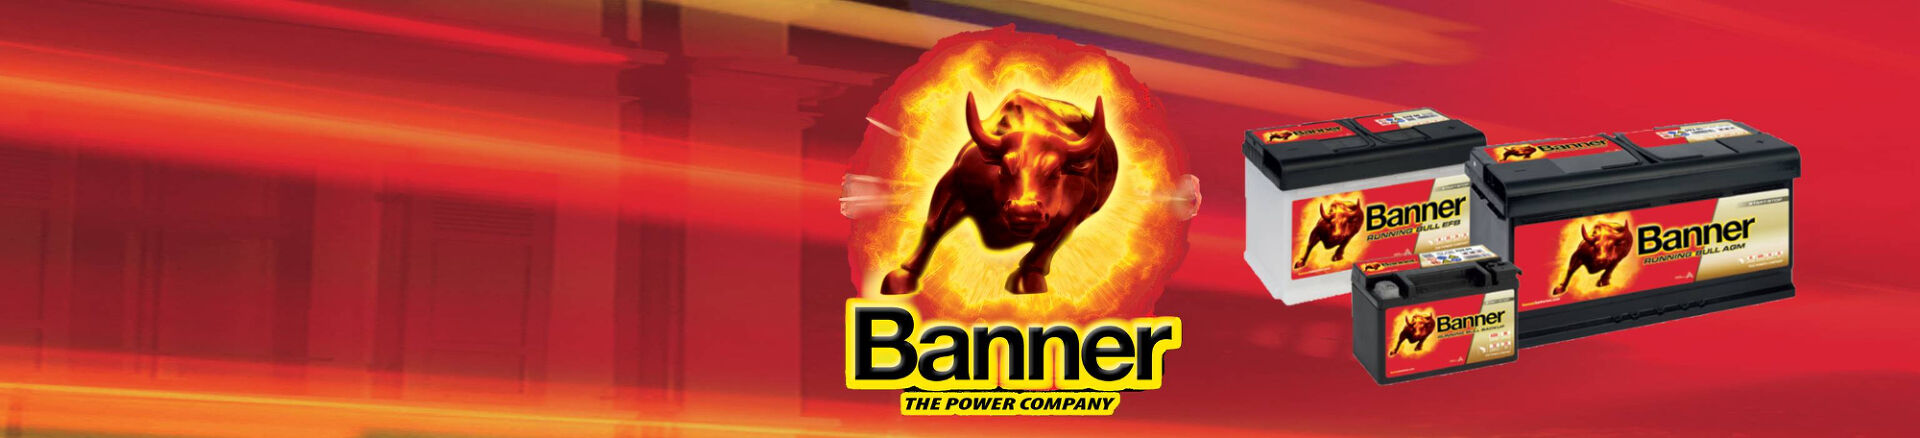 Водеща европейска марка акумулатори с международно пазарно присъствие, компанията Banner Batterien произвежда и дистрибутира стартерни акумулатори, промишлени акумулатори и аксесоари за тях с премиум качество. Вече повече от 8 десетилетия известният символ на бик е гаранция за производството на акумулатори, отговарящи на най-високите стандарти за качество.